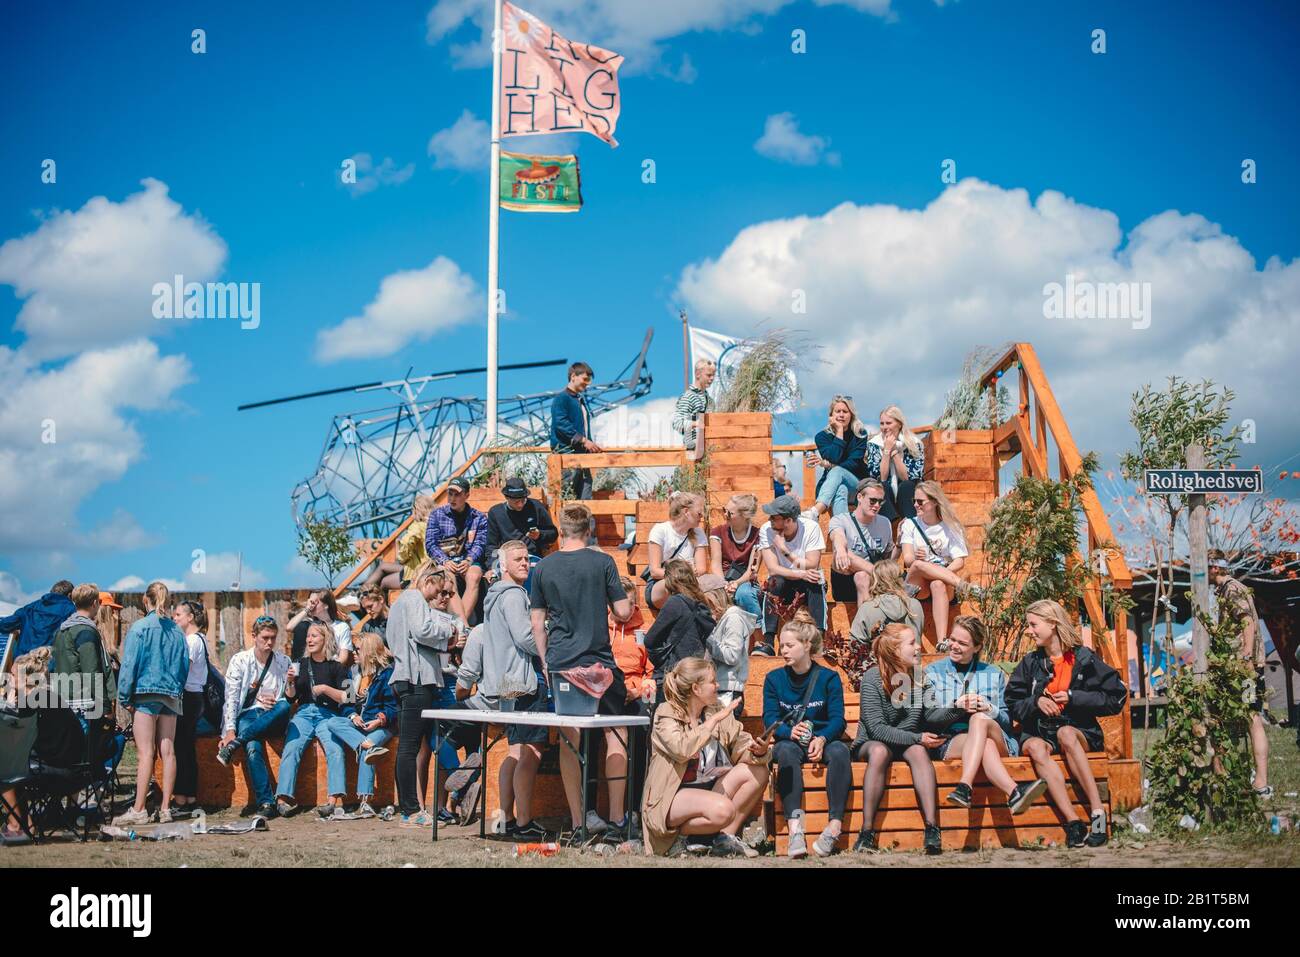 Dream City, Roskilde Festival 2017 avec des personnes excitées buvant et profitant du soleil. Roskilde, Danemark Banque D'Images